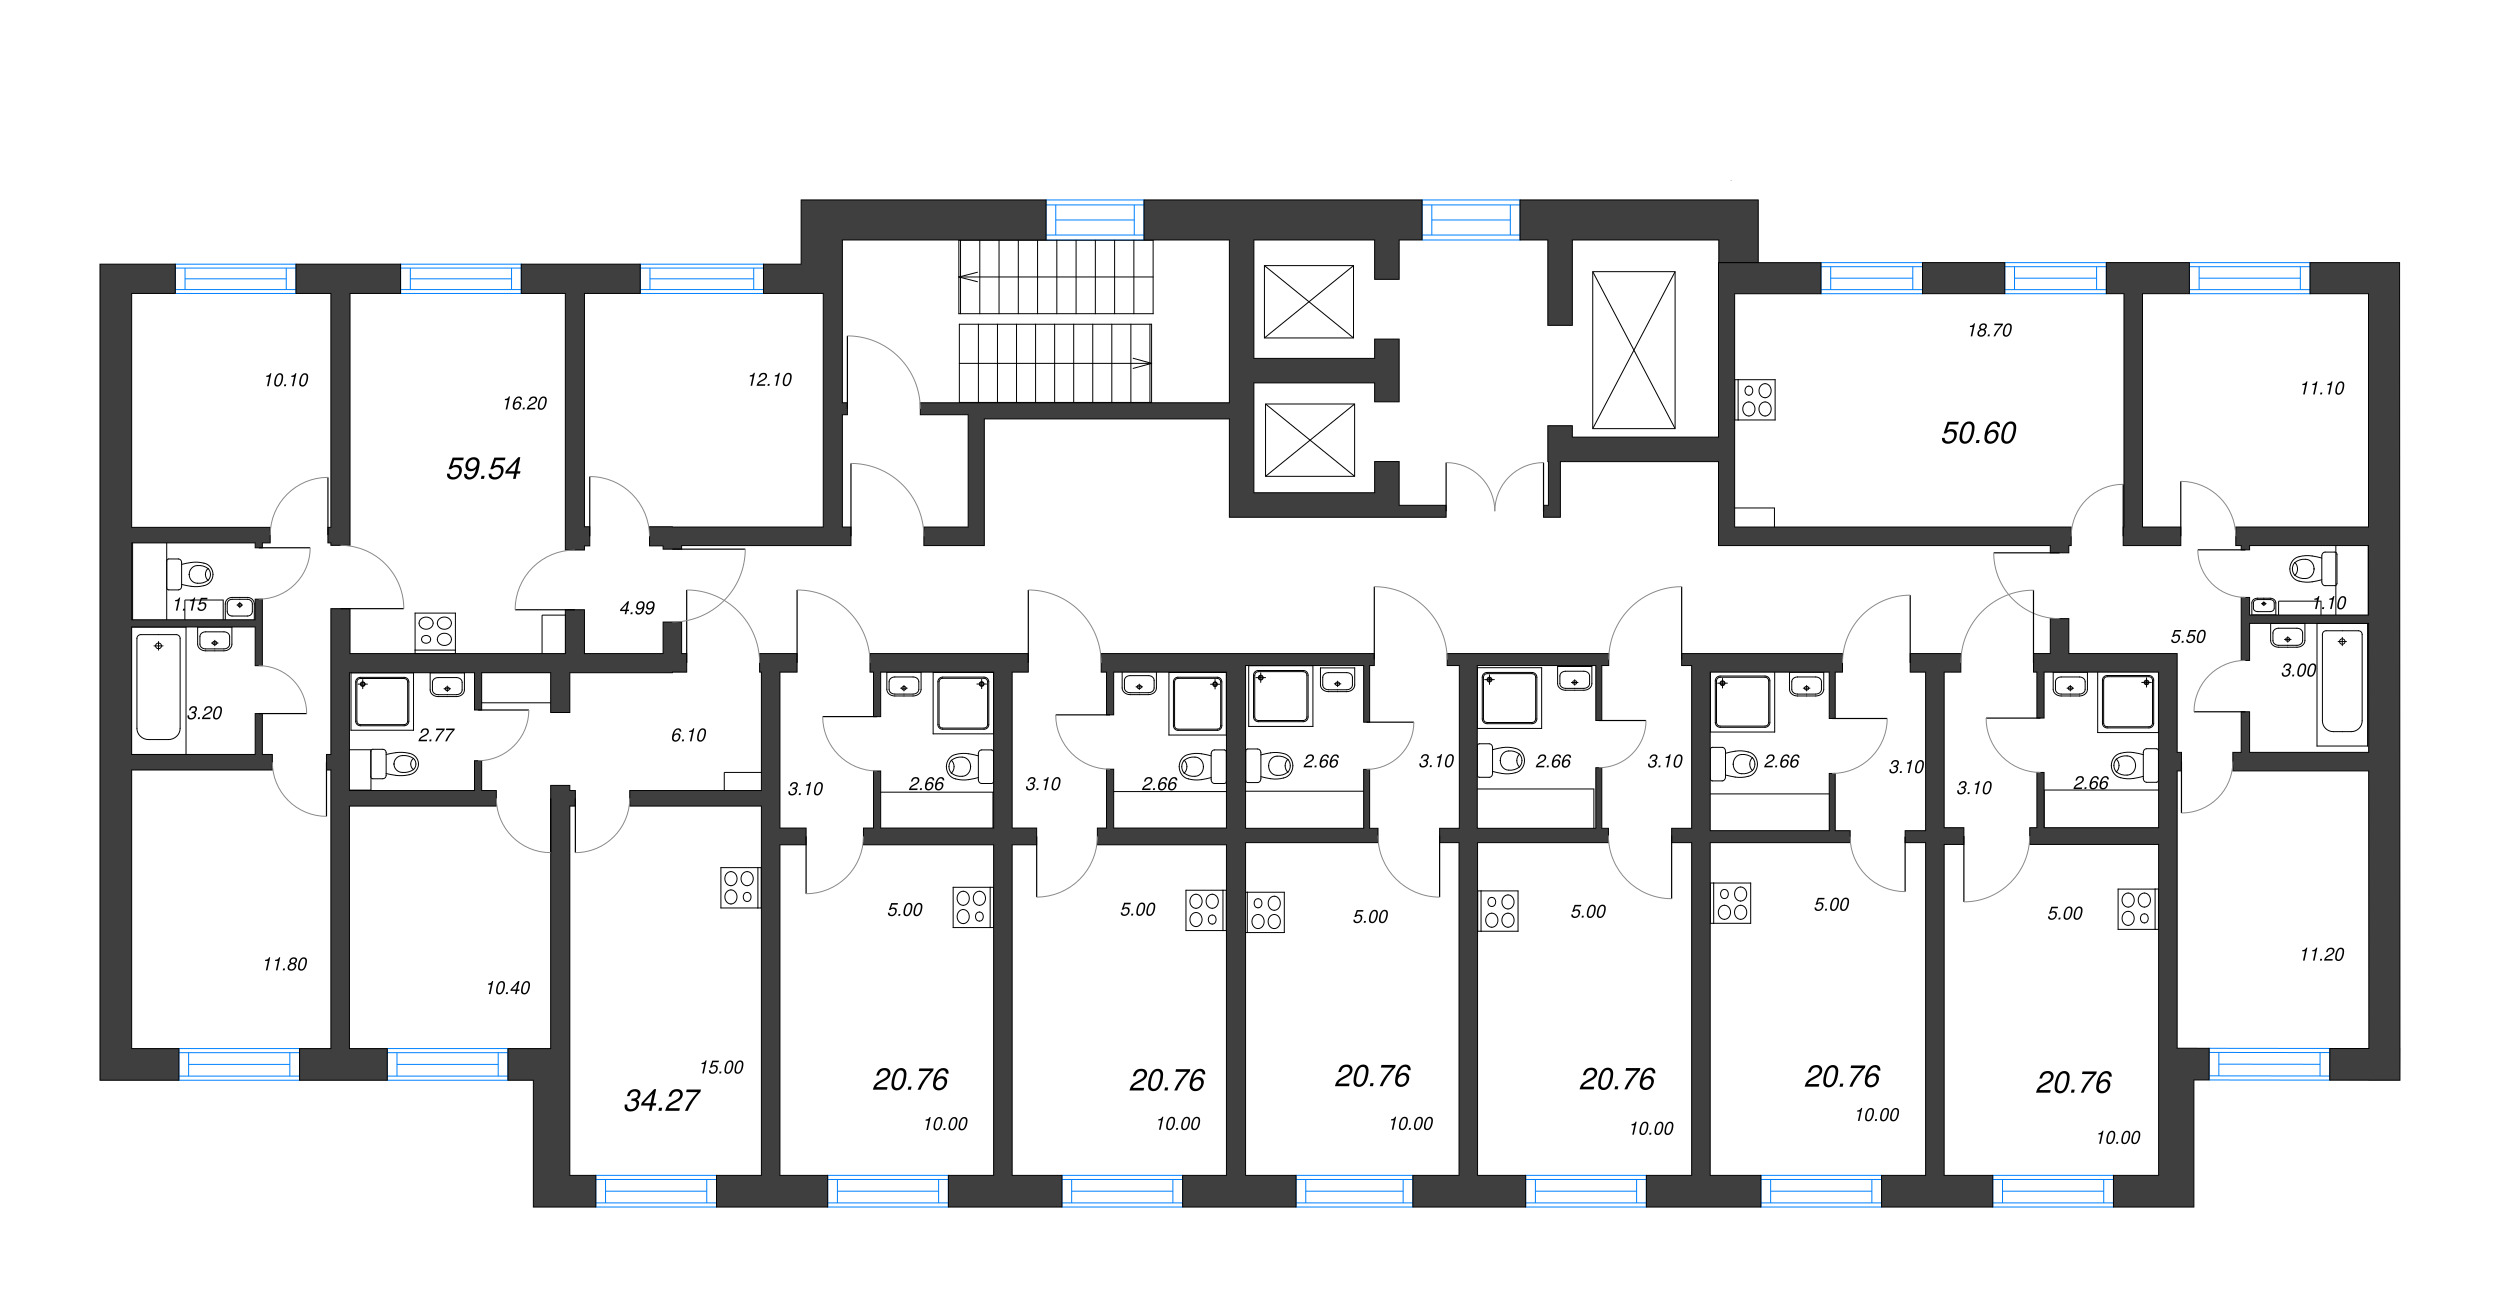 3-комнатная (Евро) квартира, 50.6 м² в ЖК "Ручьи" - планировка этажа